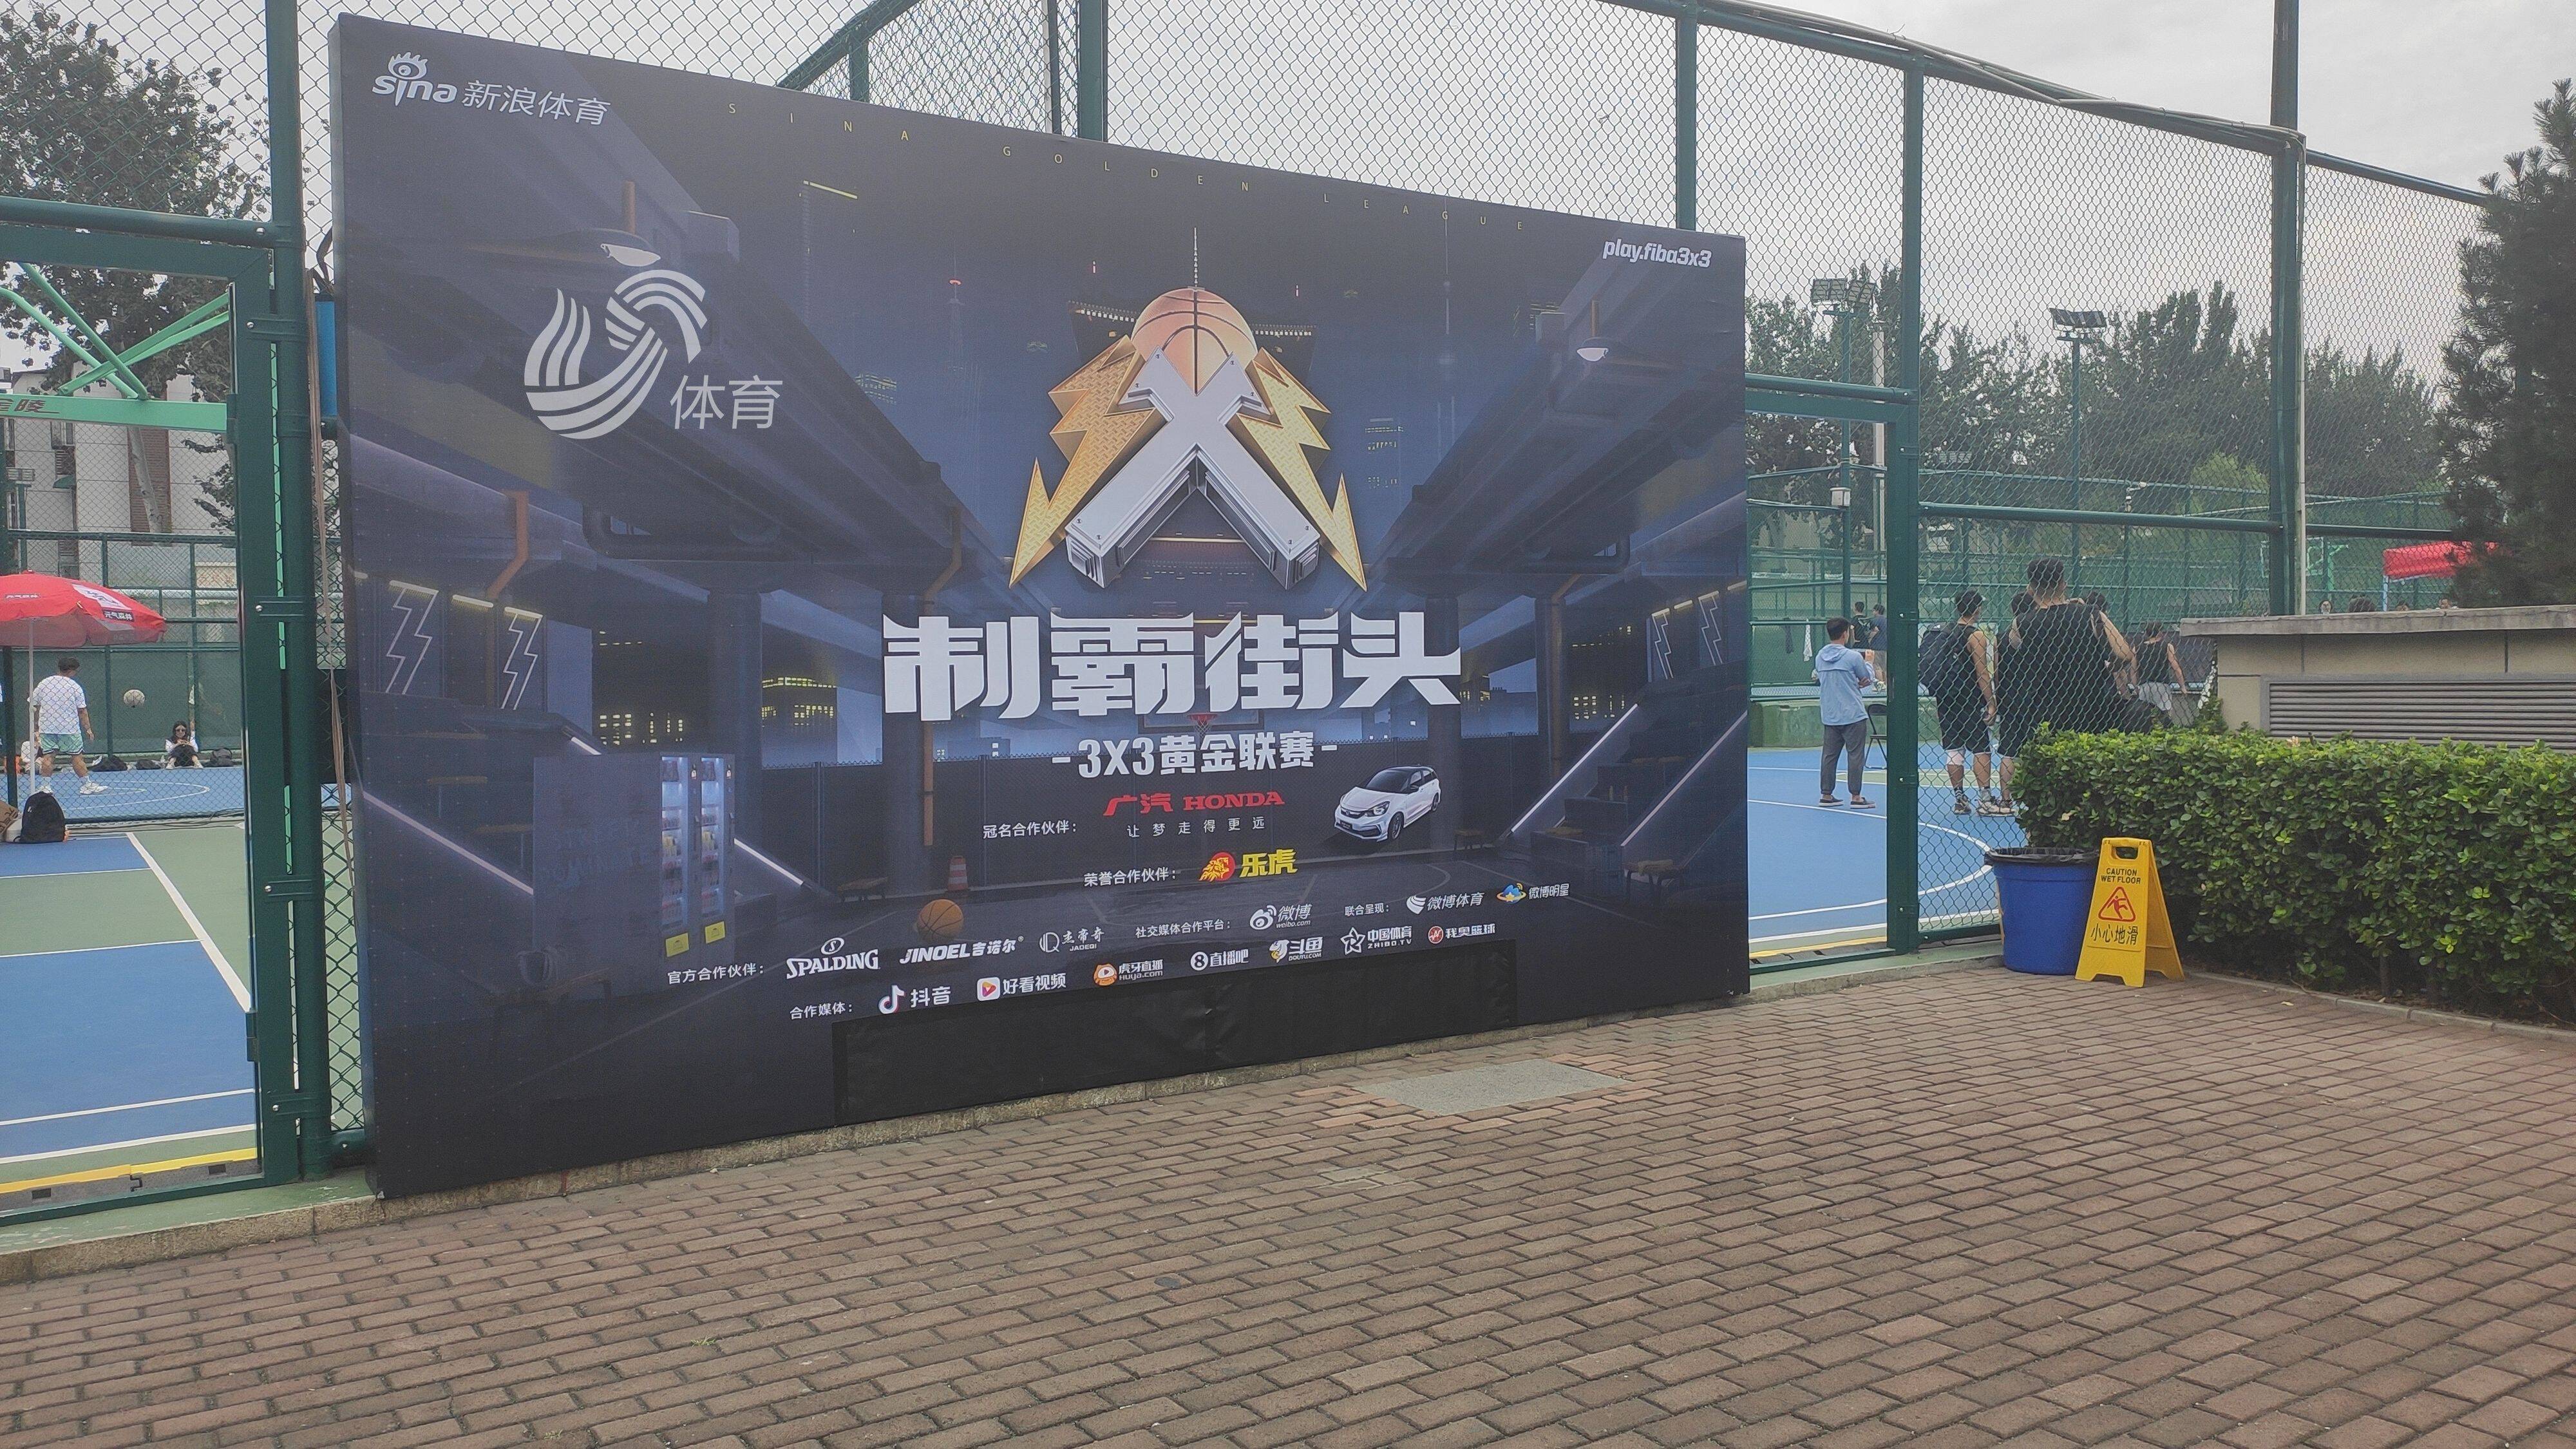 64支队伍参赛！新浪3X3黄金联赛山东大区预选赛在济南市全民健身中心举办